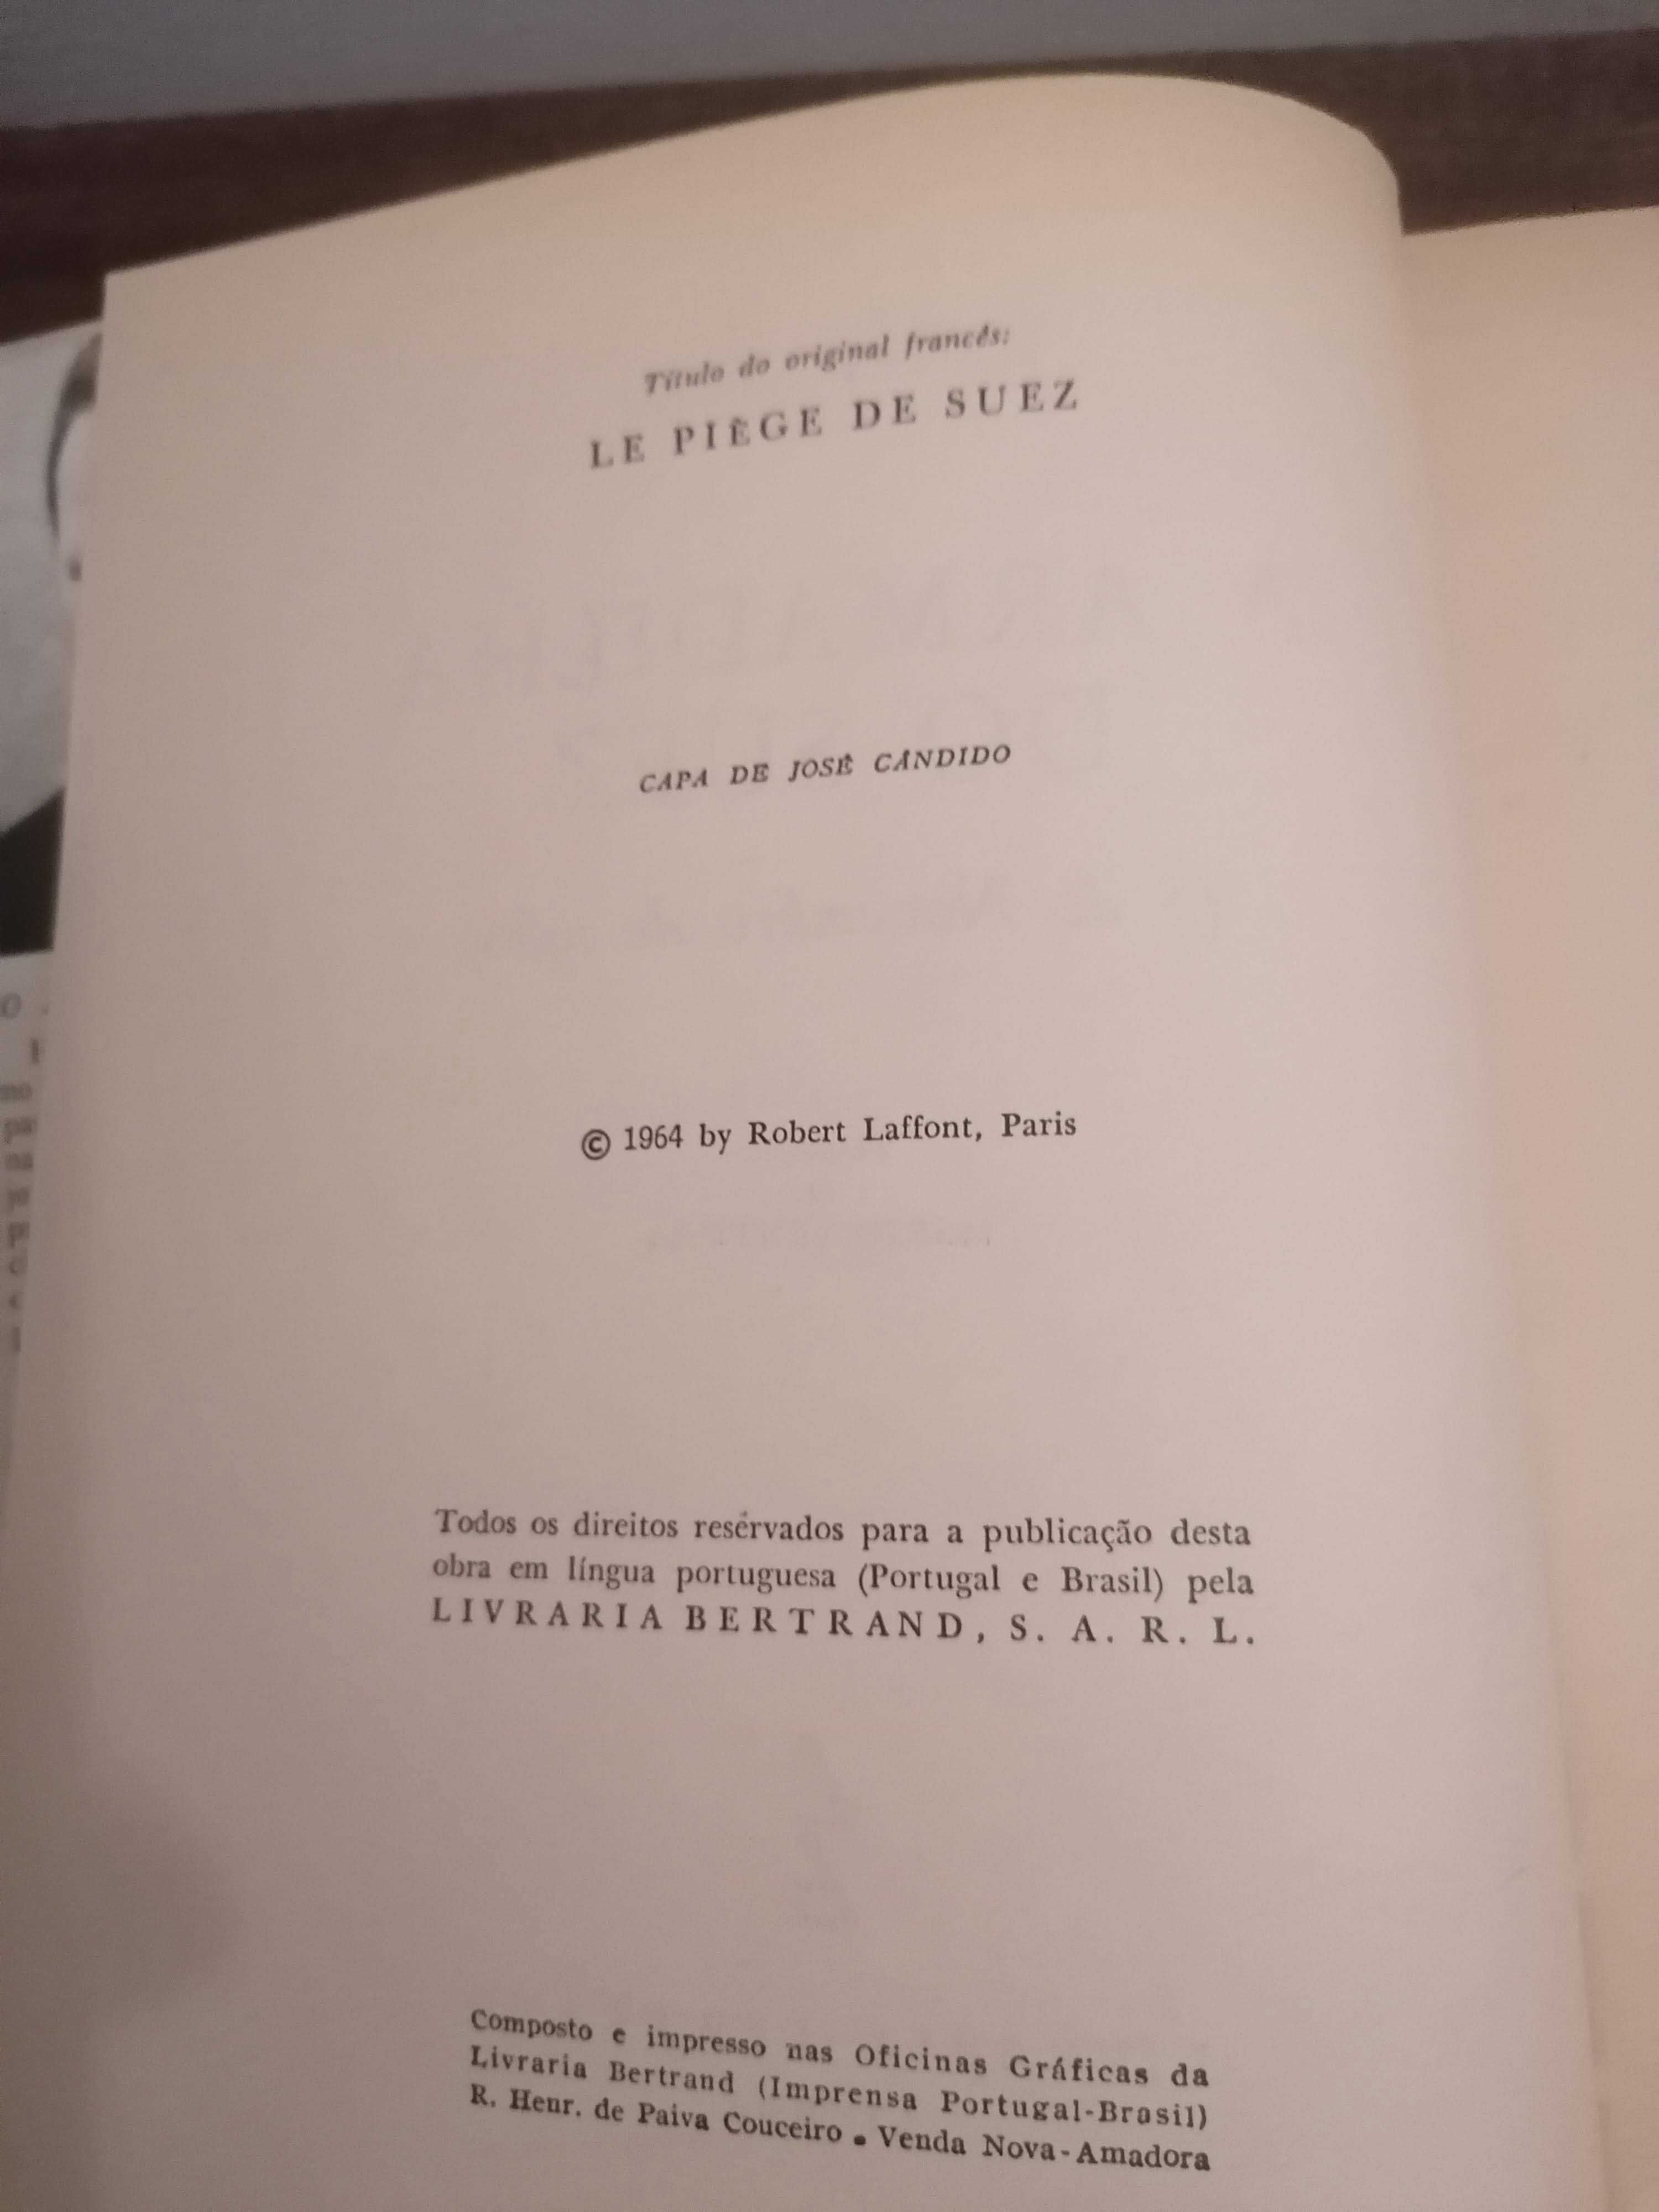 Livro “A Armadilha do Suez” de Henri Azeau